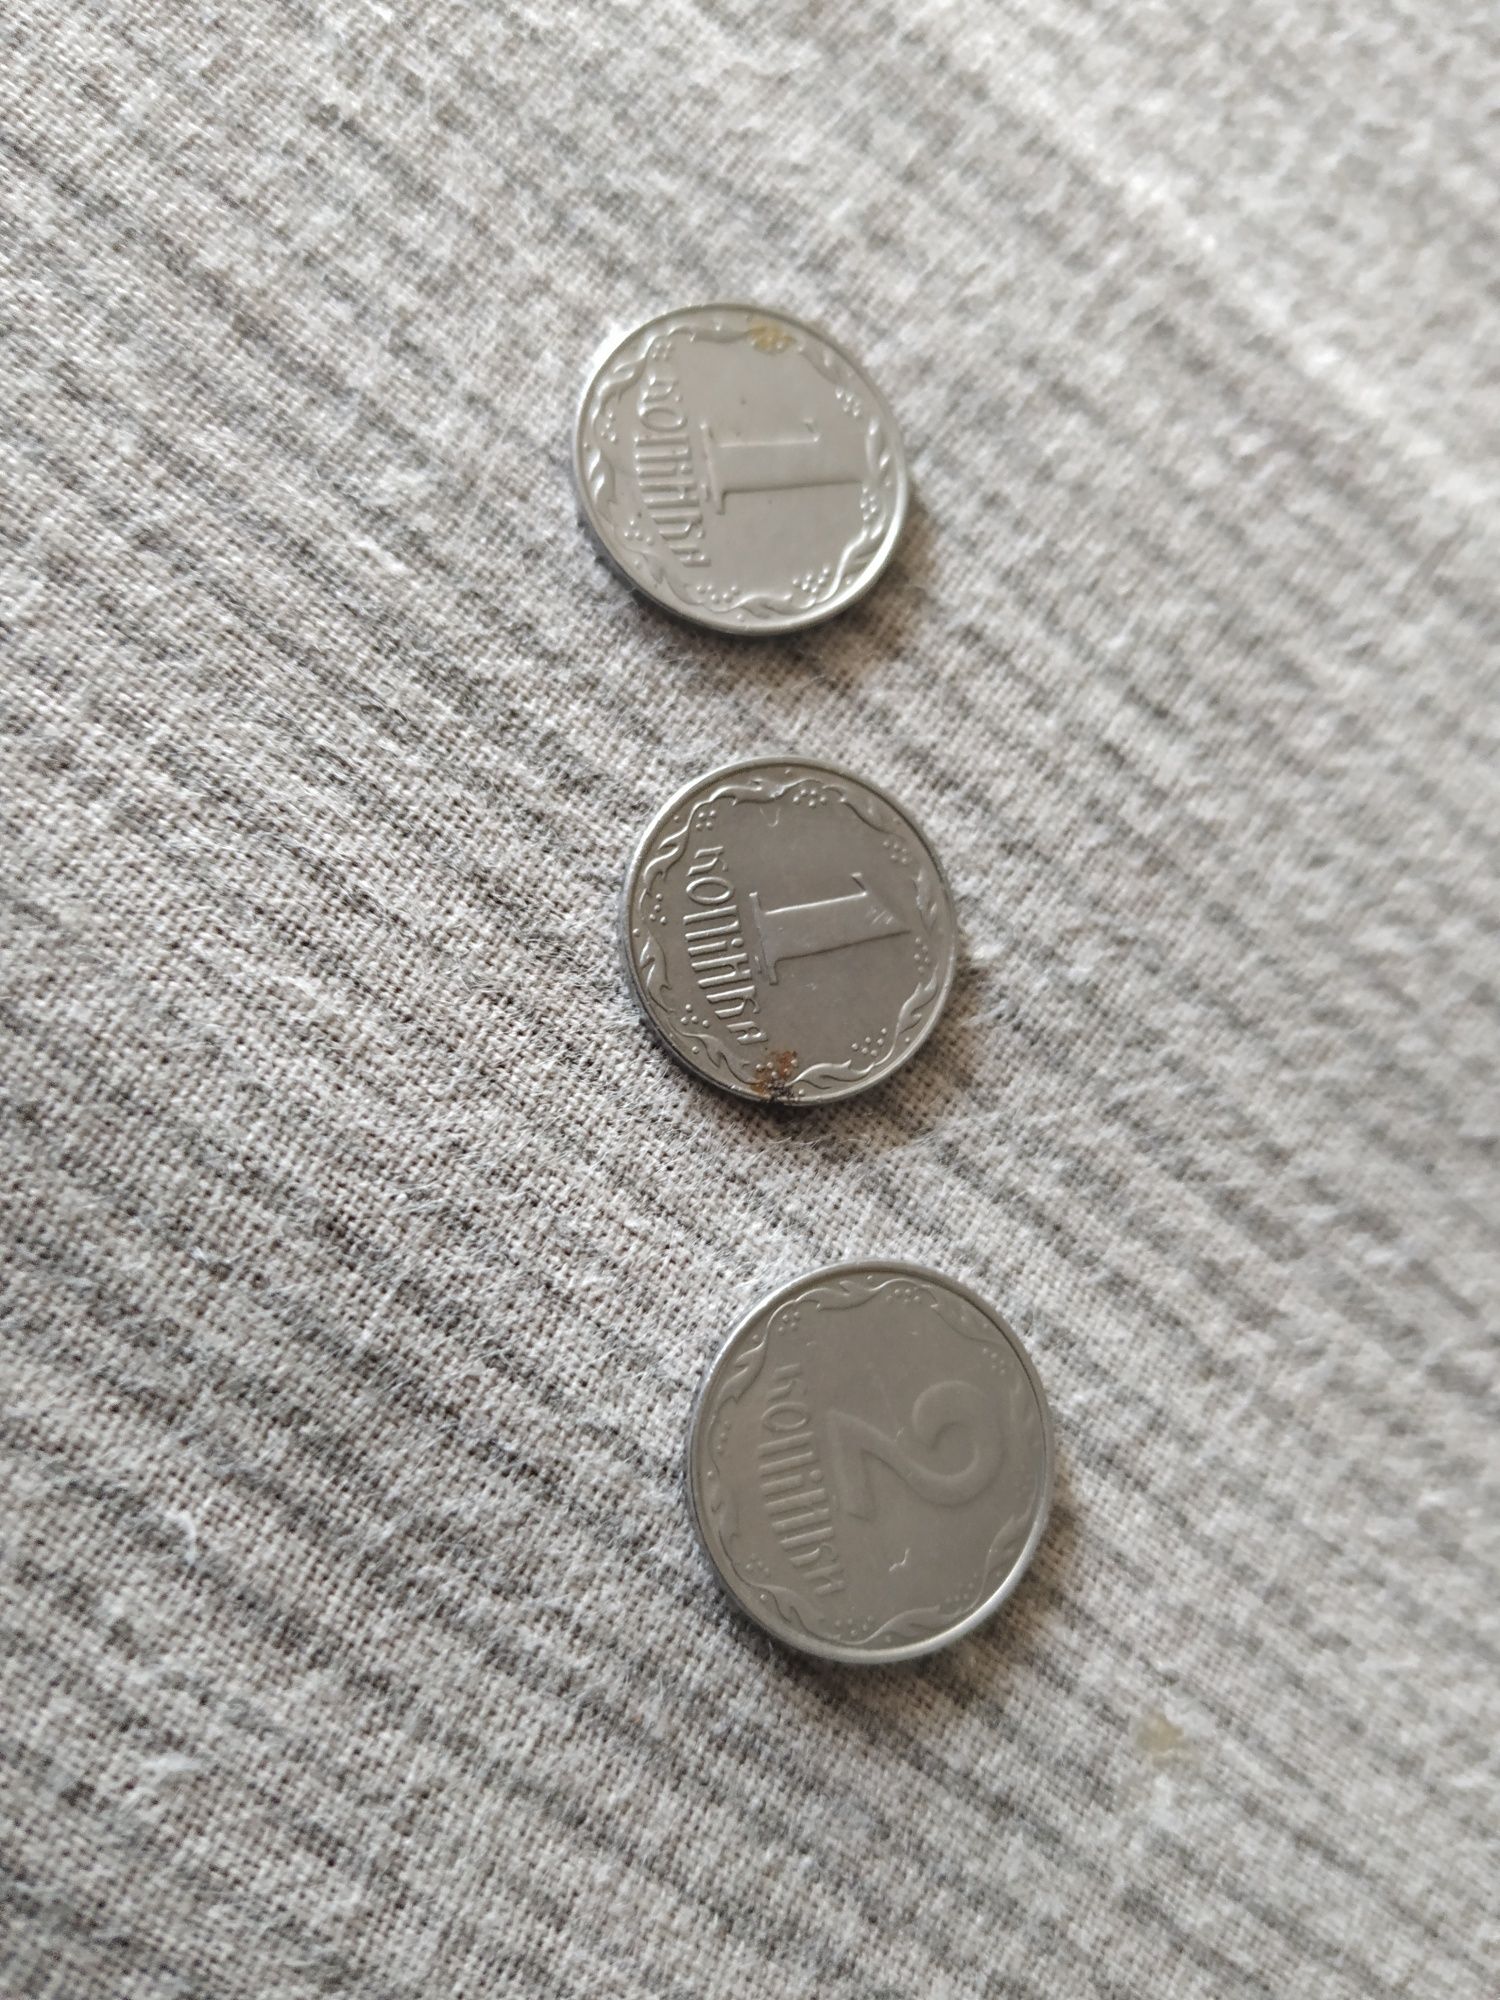 Монеты 1 копейка, 2 копейки, 5 копеек